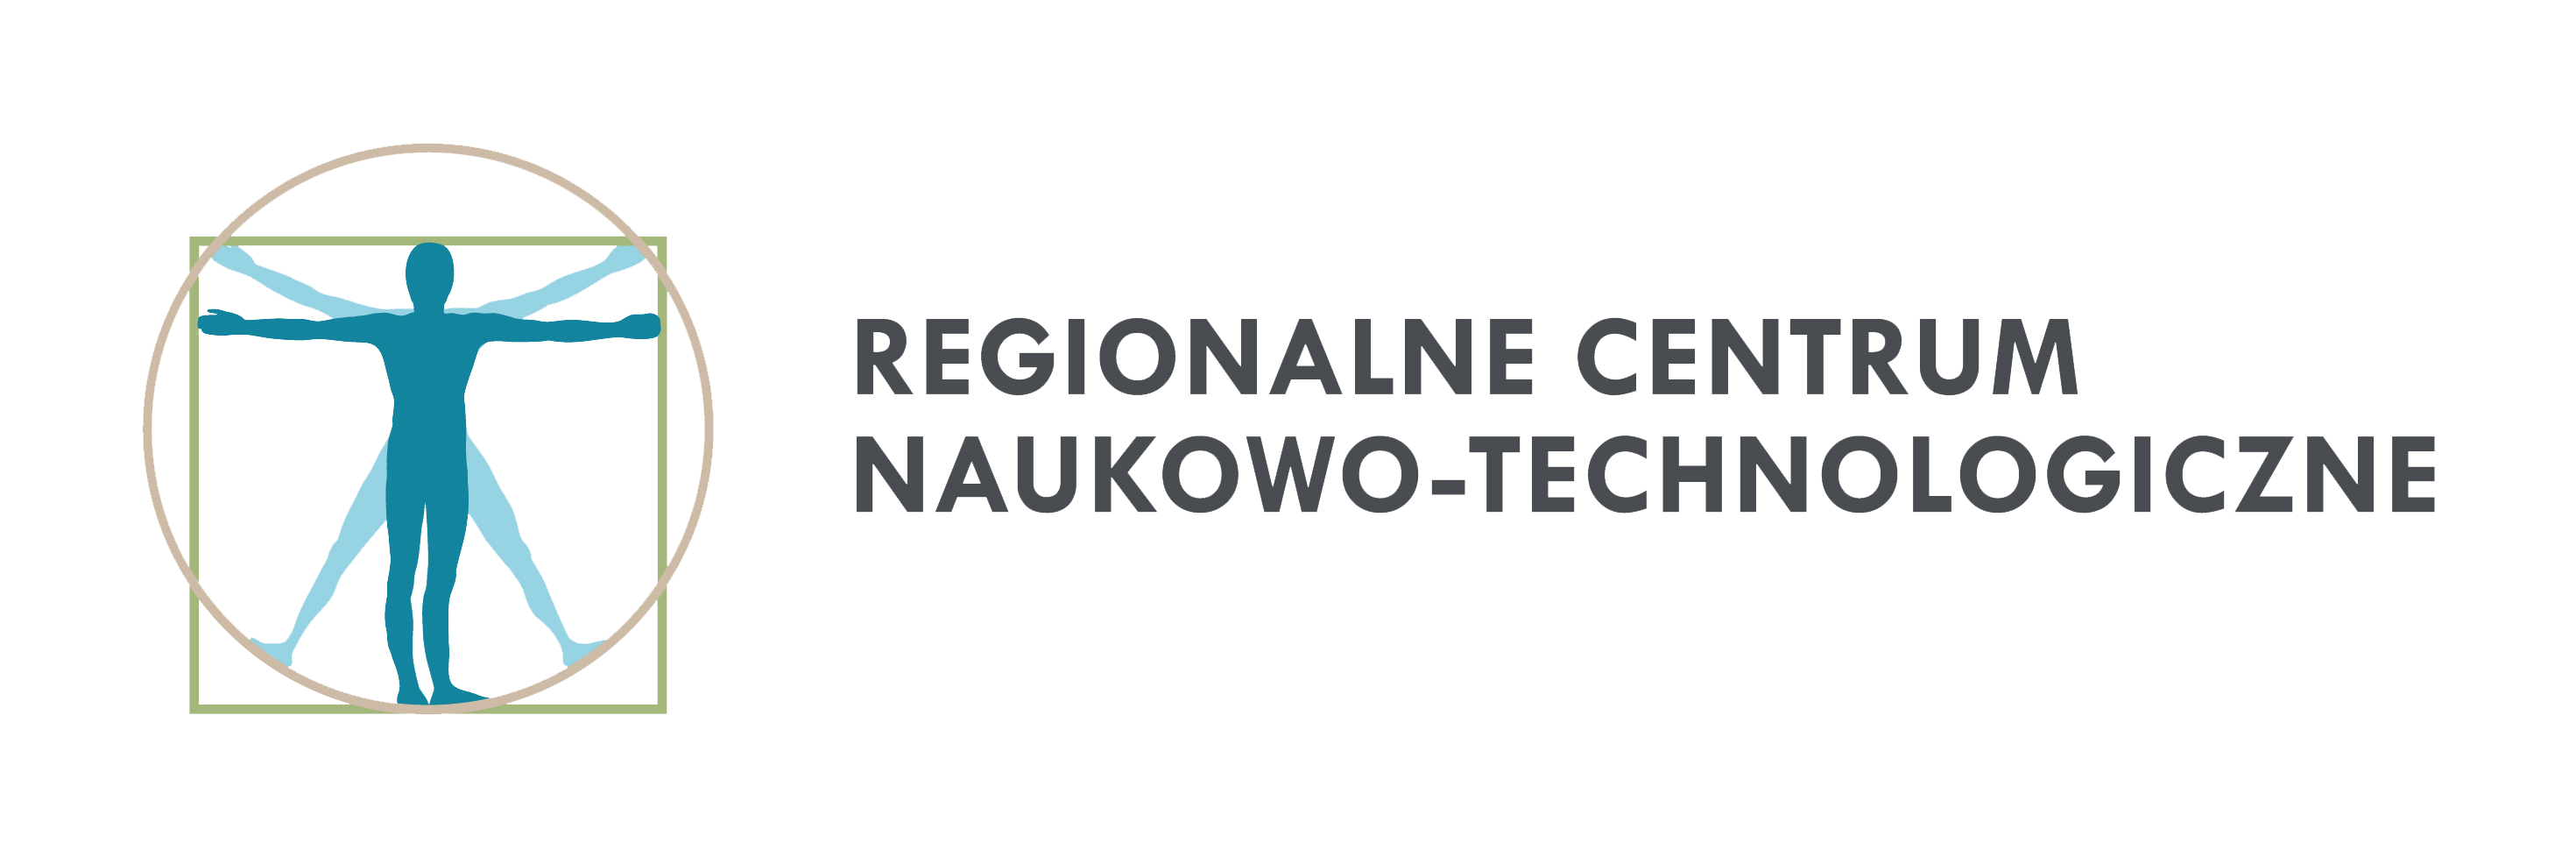 Regionalne Centrum Naukowo-Technologiczne w dniach 7-8 listopada zaprasza na spotkania dot. biogospodarki.